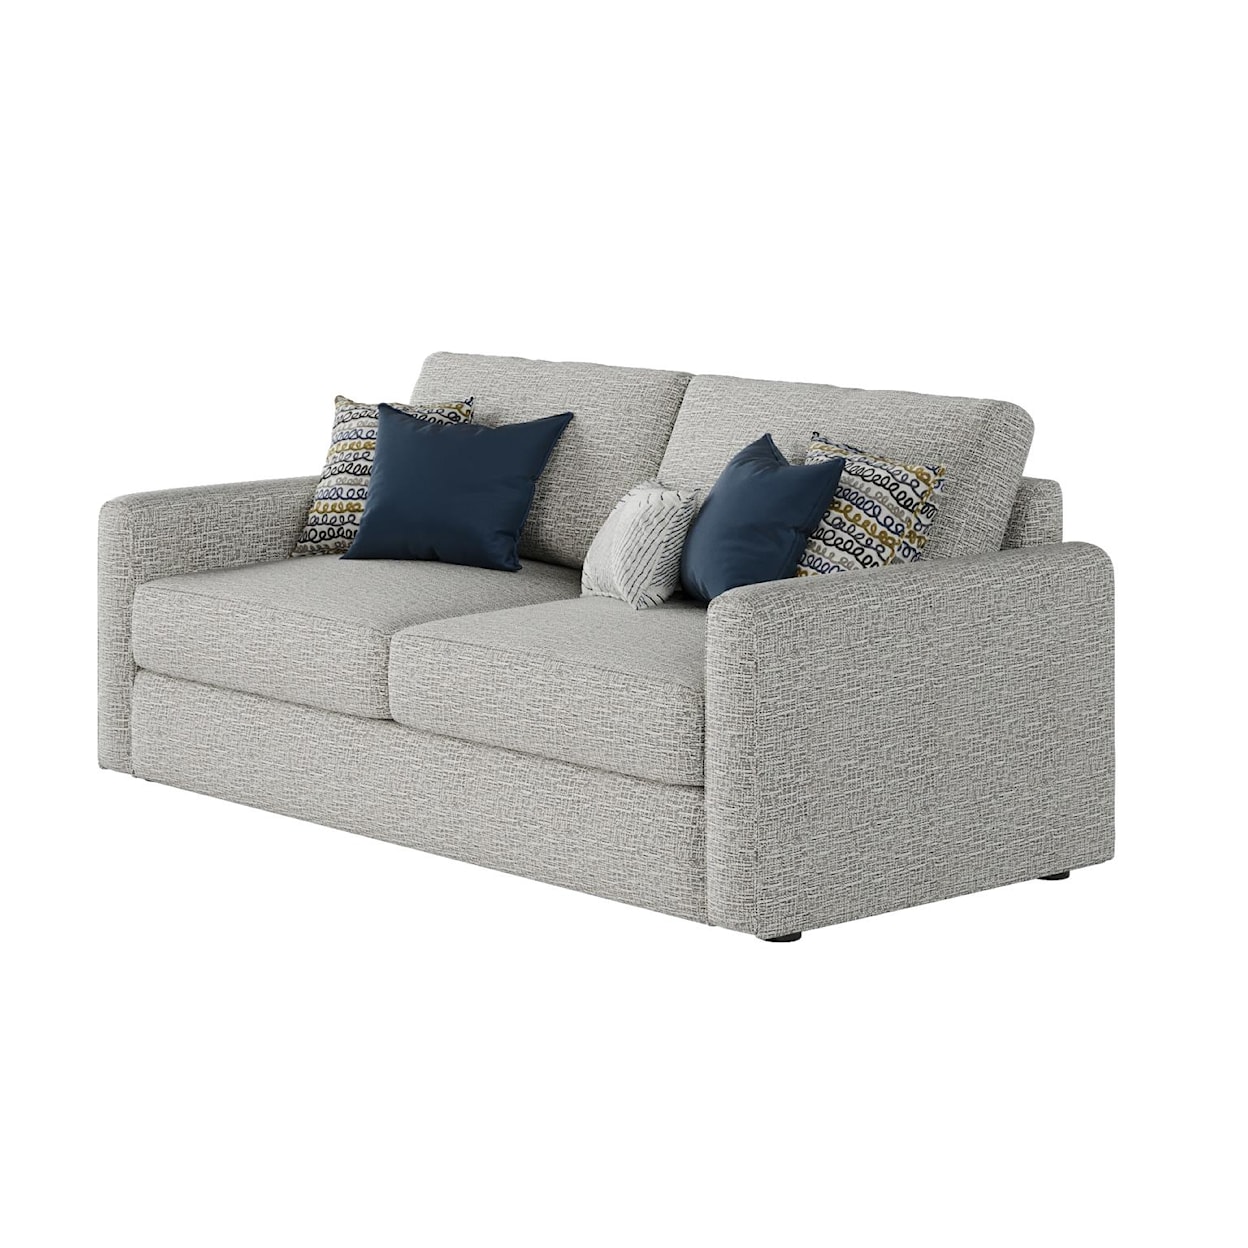 Fusion Furniture 7001 HARMER PLATINUM Sofa